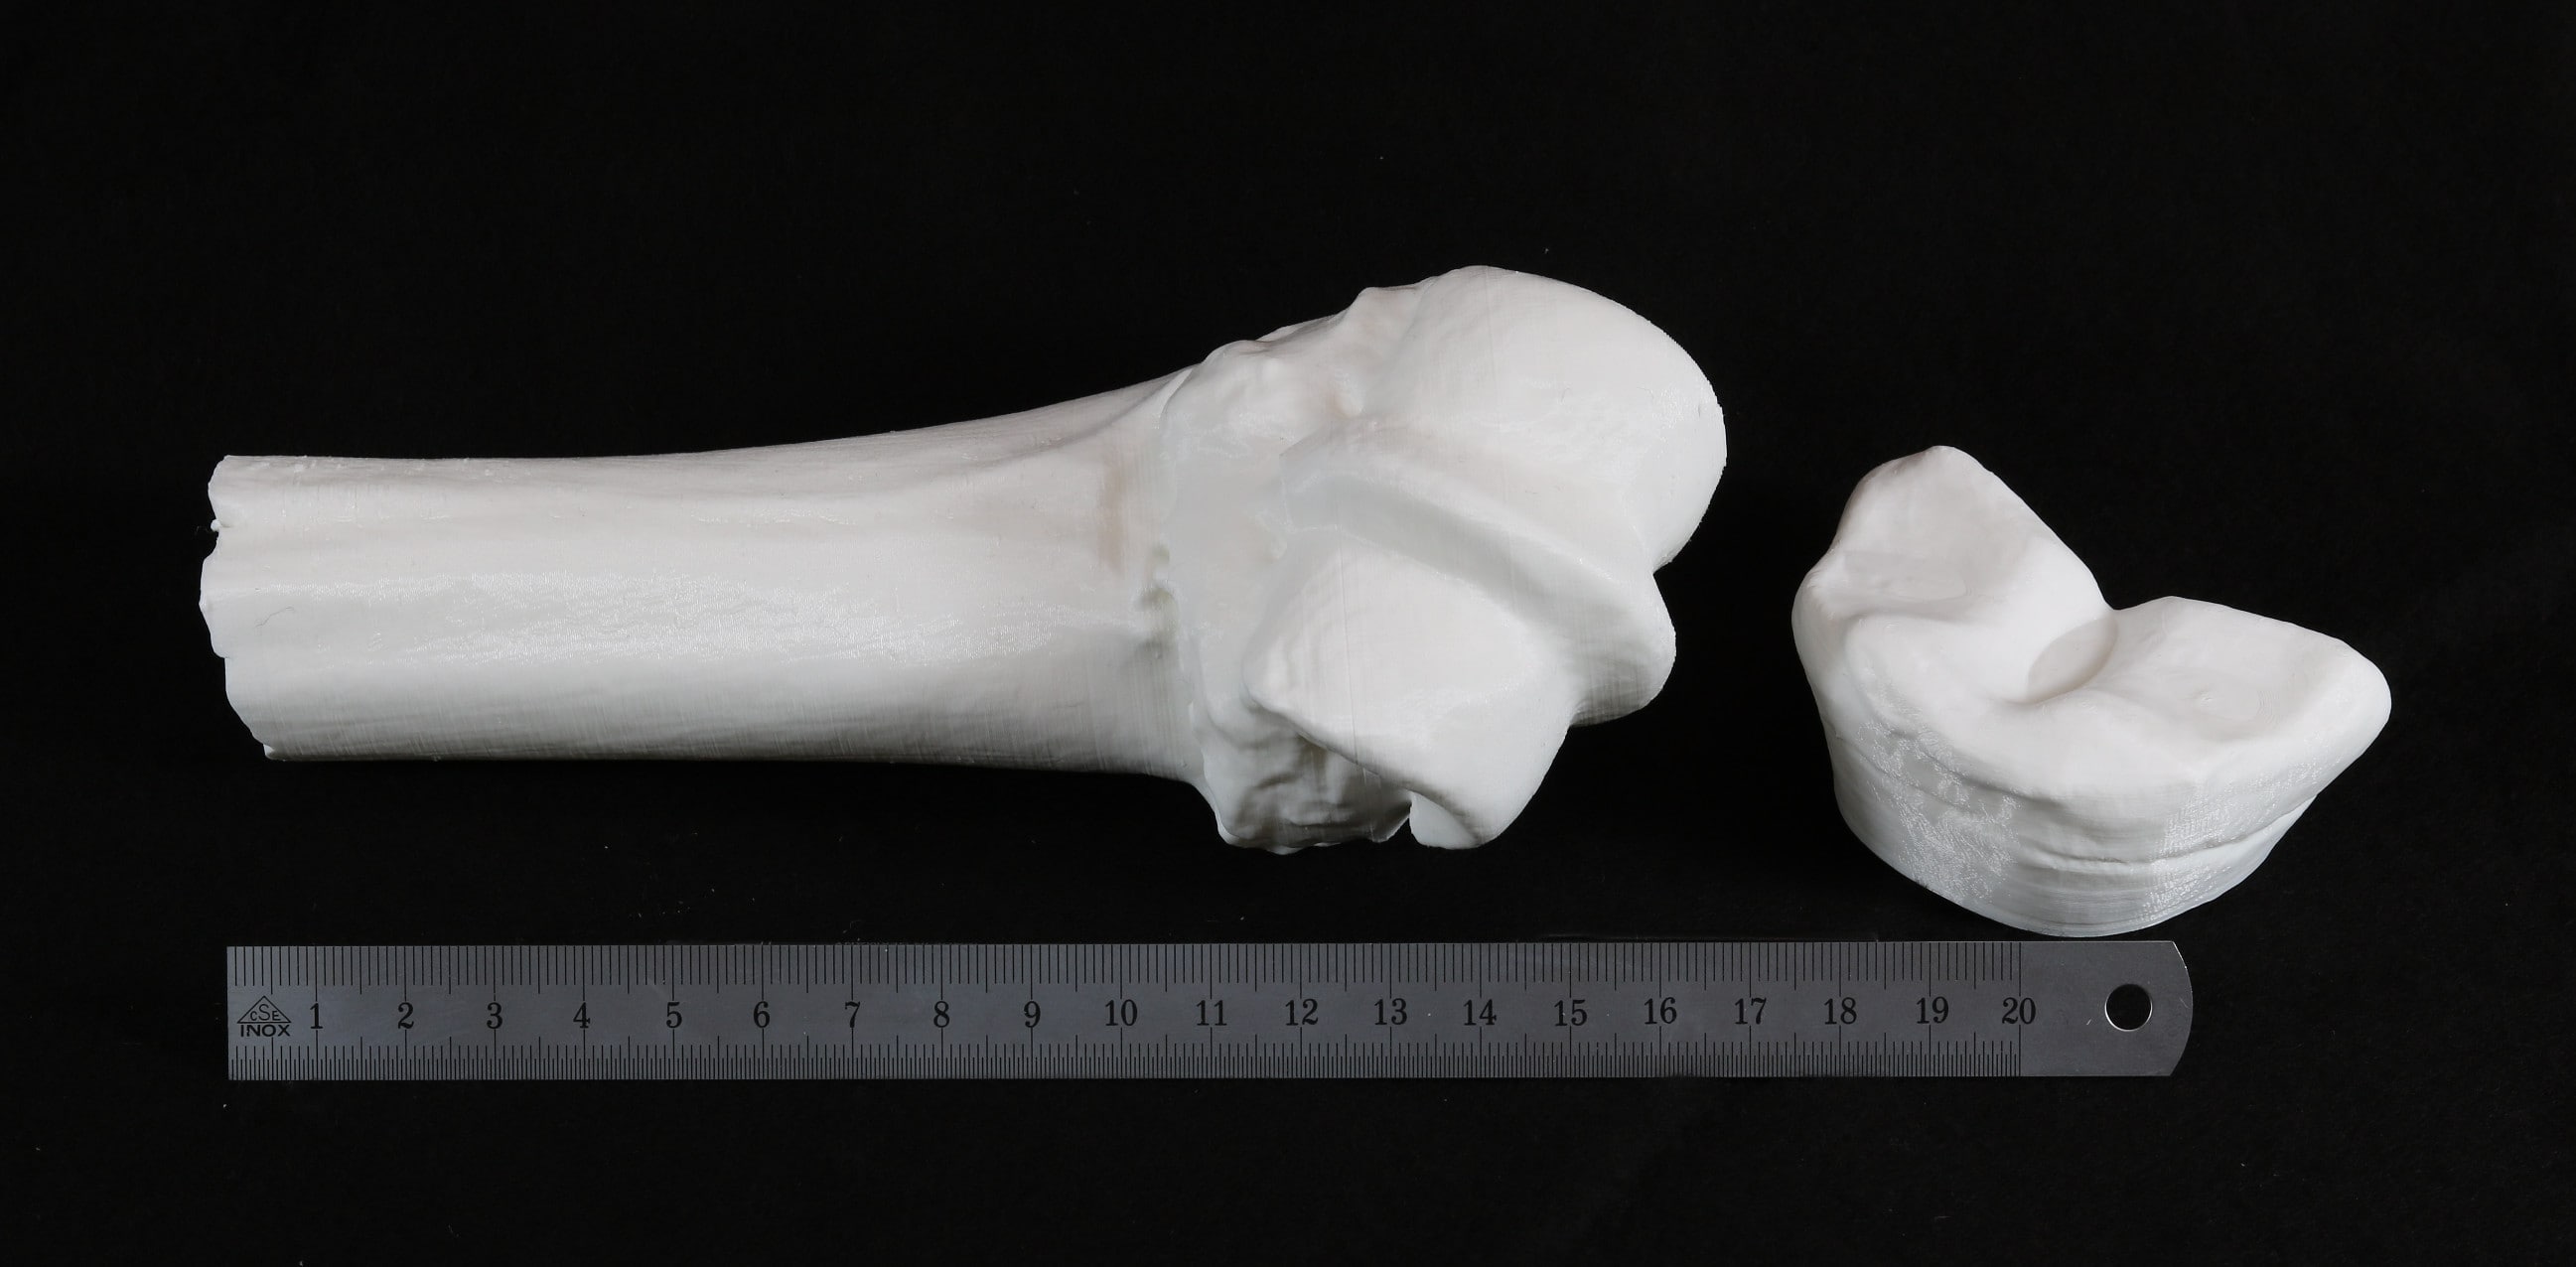 3D print of a leg bone